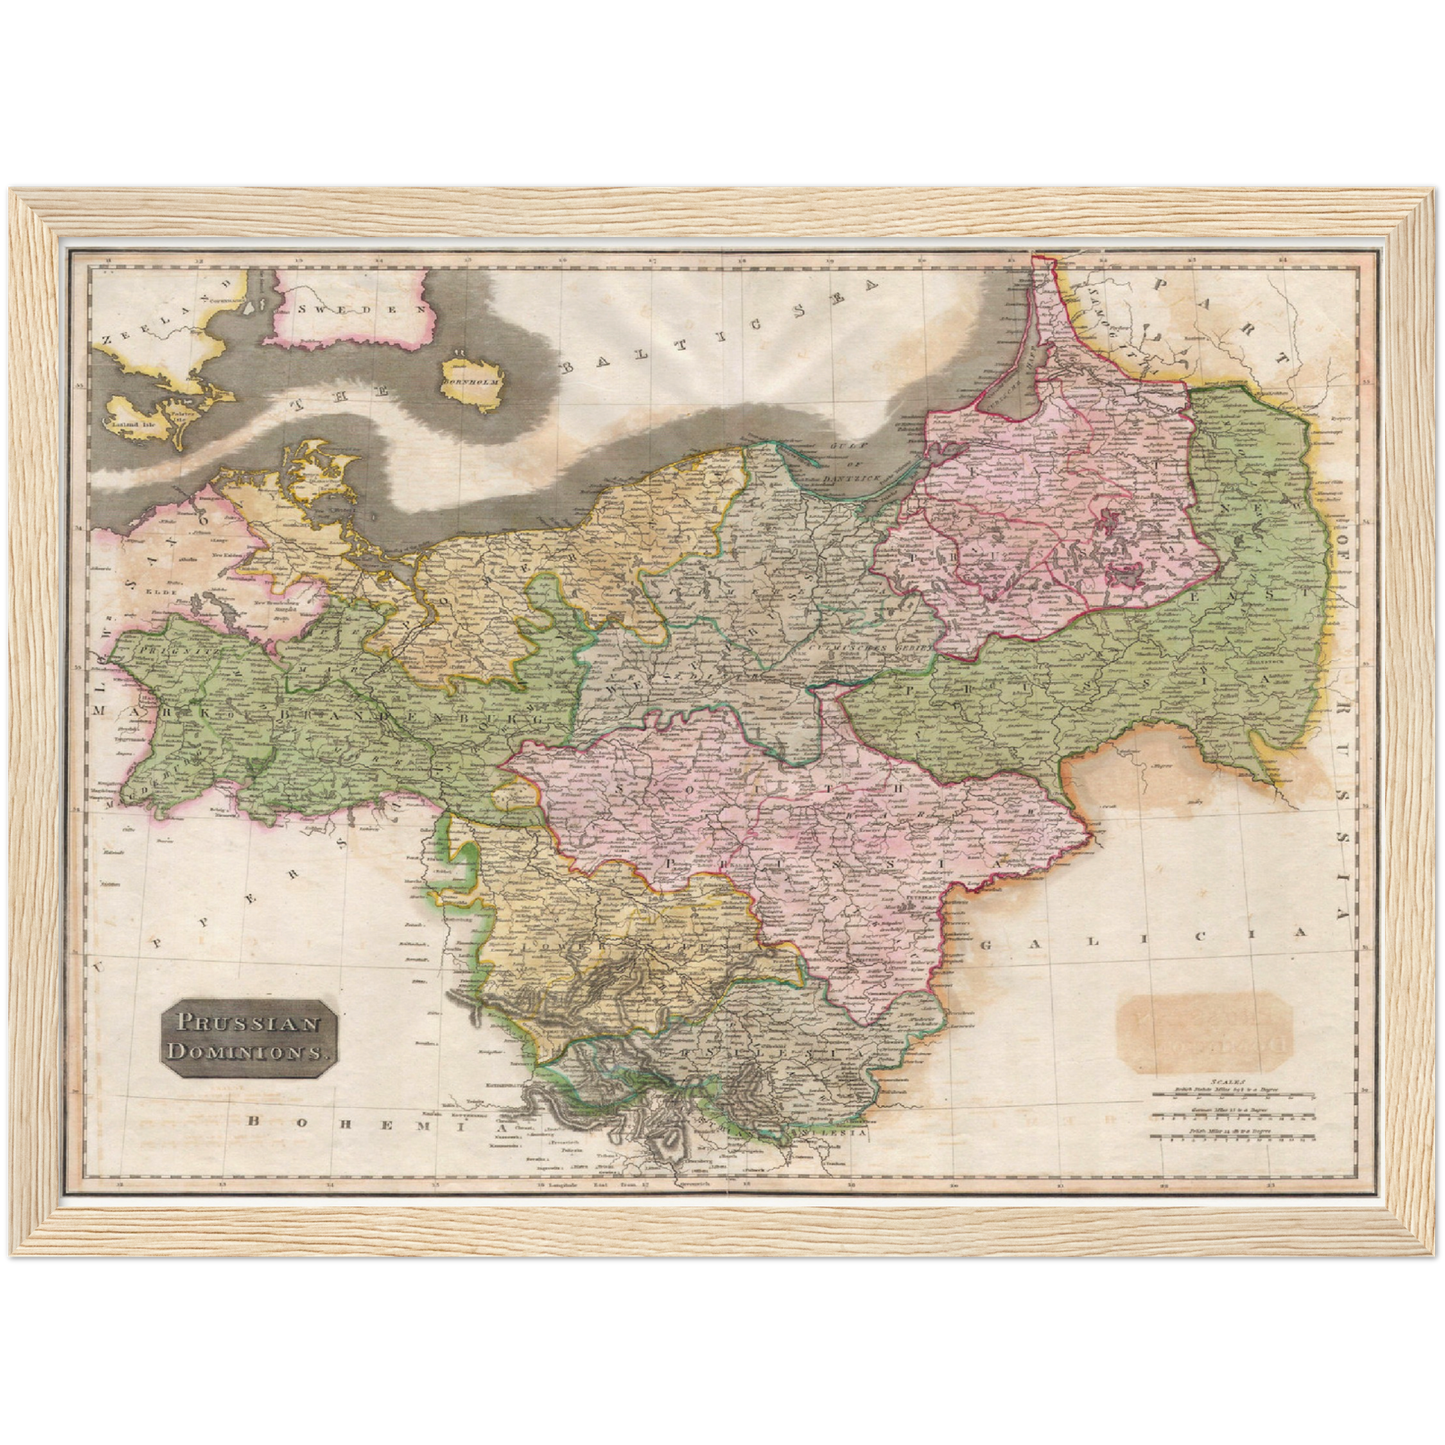 Historische Landkarte Preußen um 1815